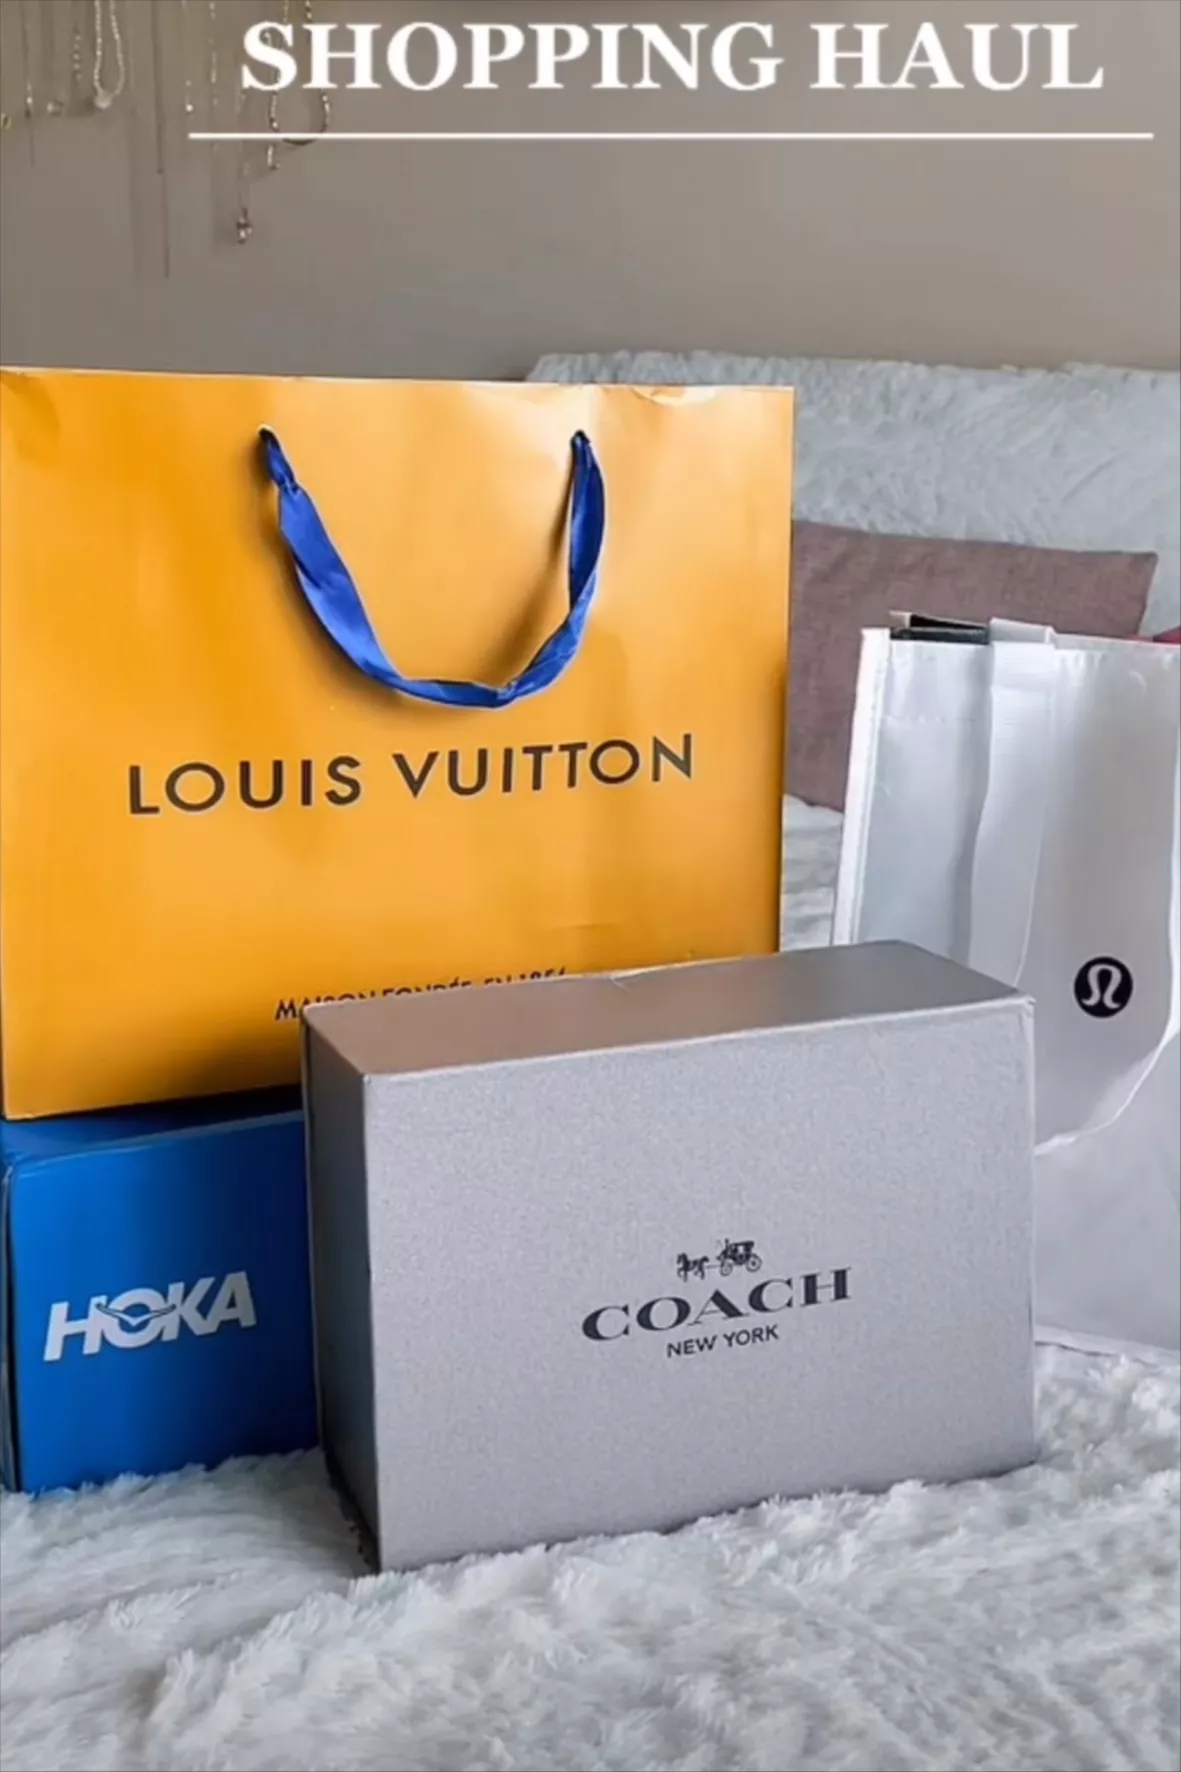 Louis Vuitton Haul  Louis vuitton gifts, Vuitton box, Louis vuitton